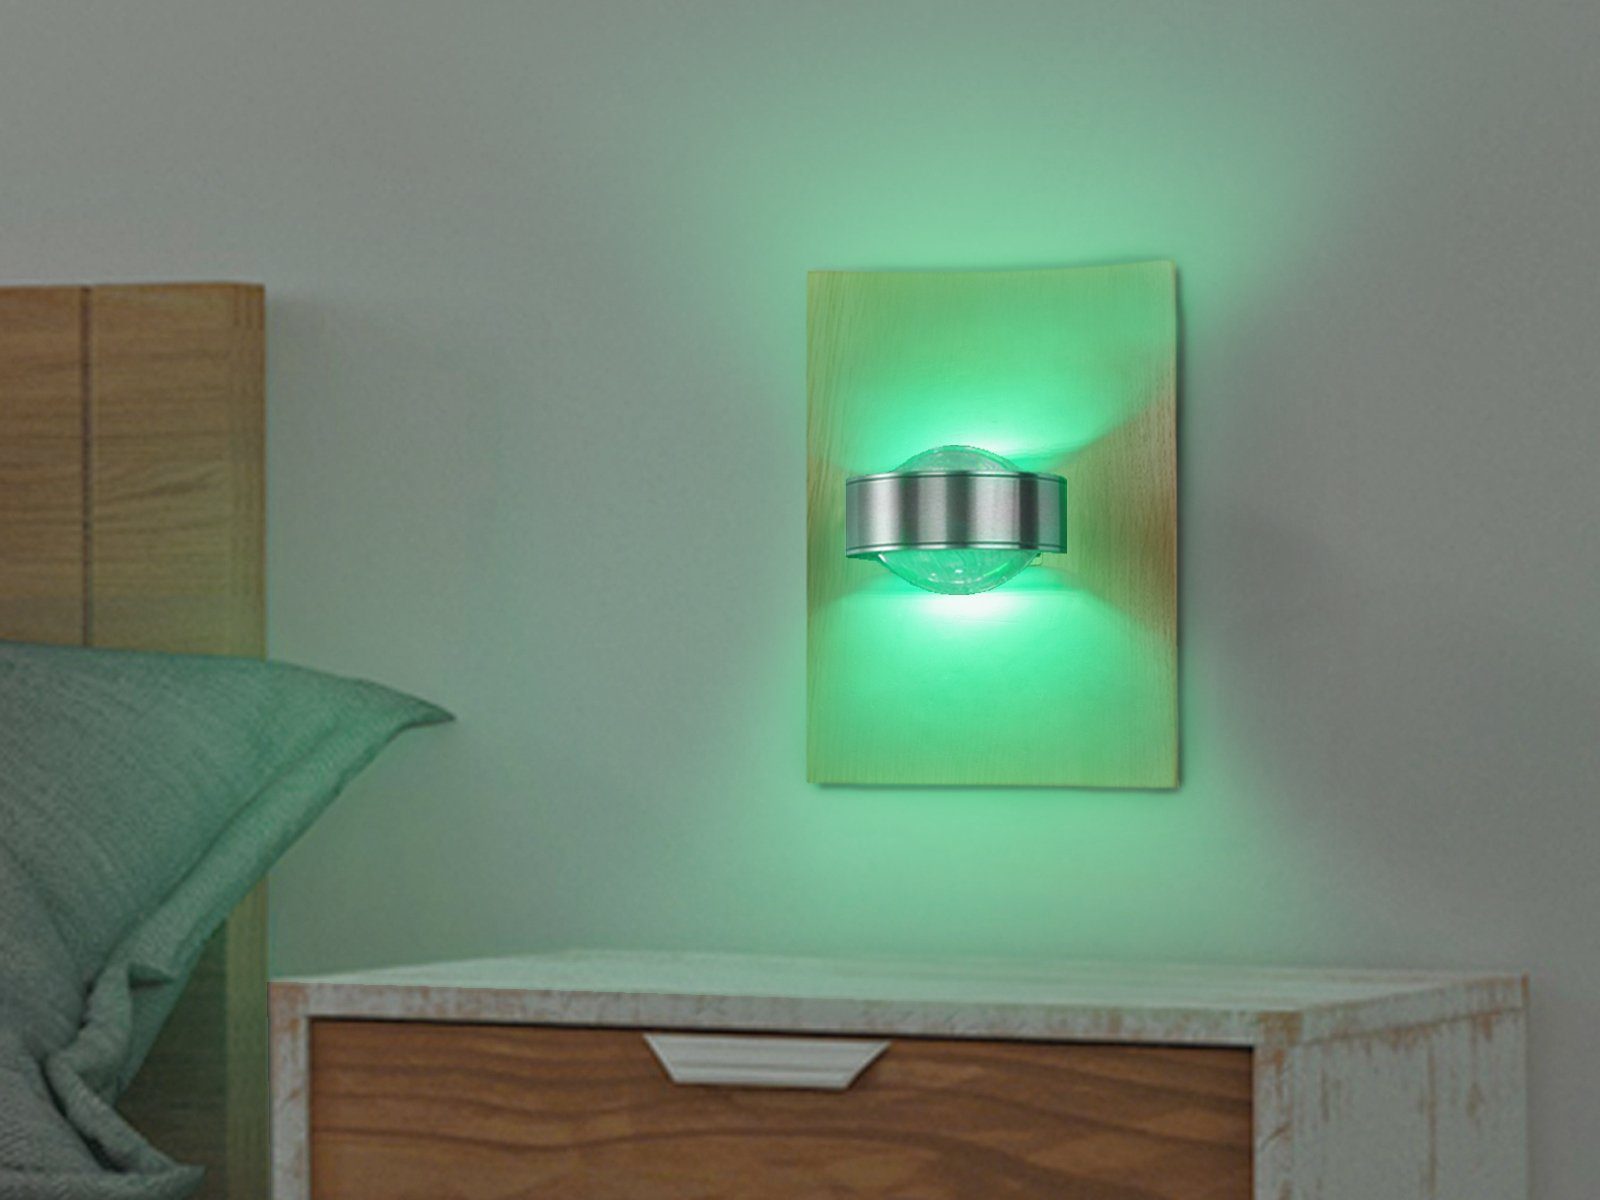 SET 2er einstellbar, ausgefallen Lichtfarbe indirekte Holz-Lampen integriert, Warmweiß-Neutralweiß Wand-Beleuchtung meineWunschleuchte fest Eiche-Brett Farbwechsel, Wandleuchte, LED LED